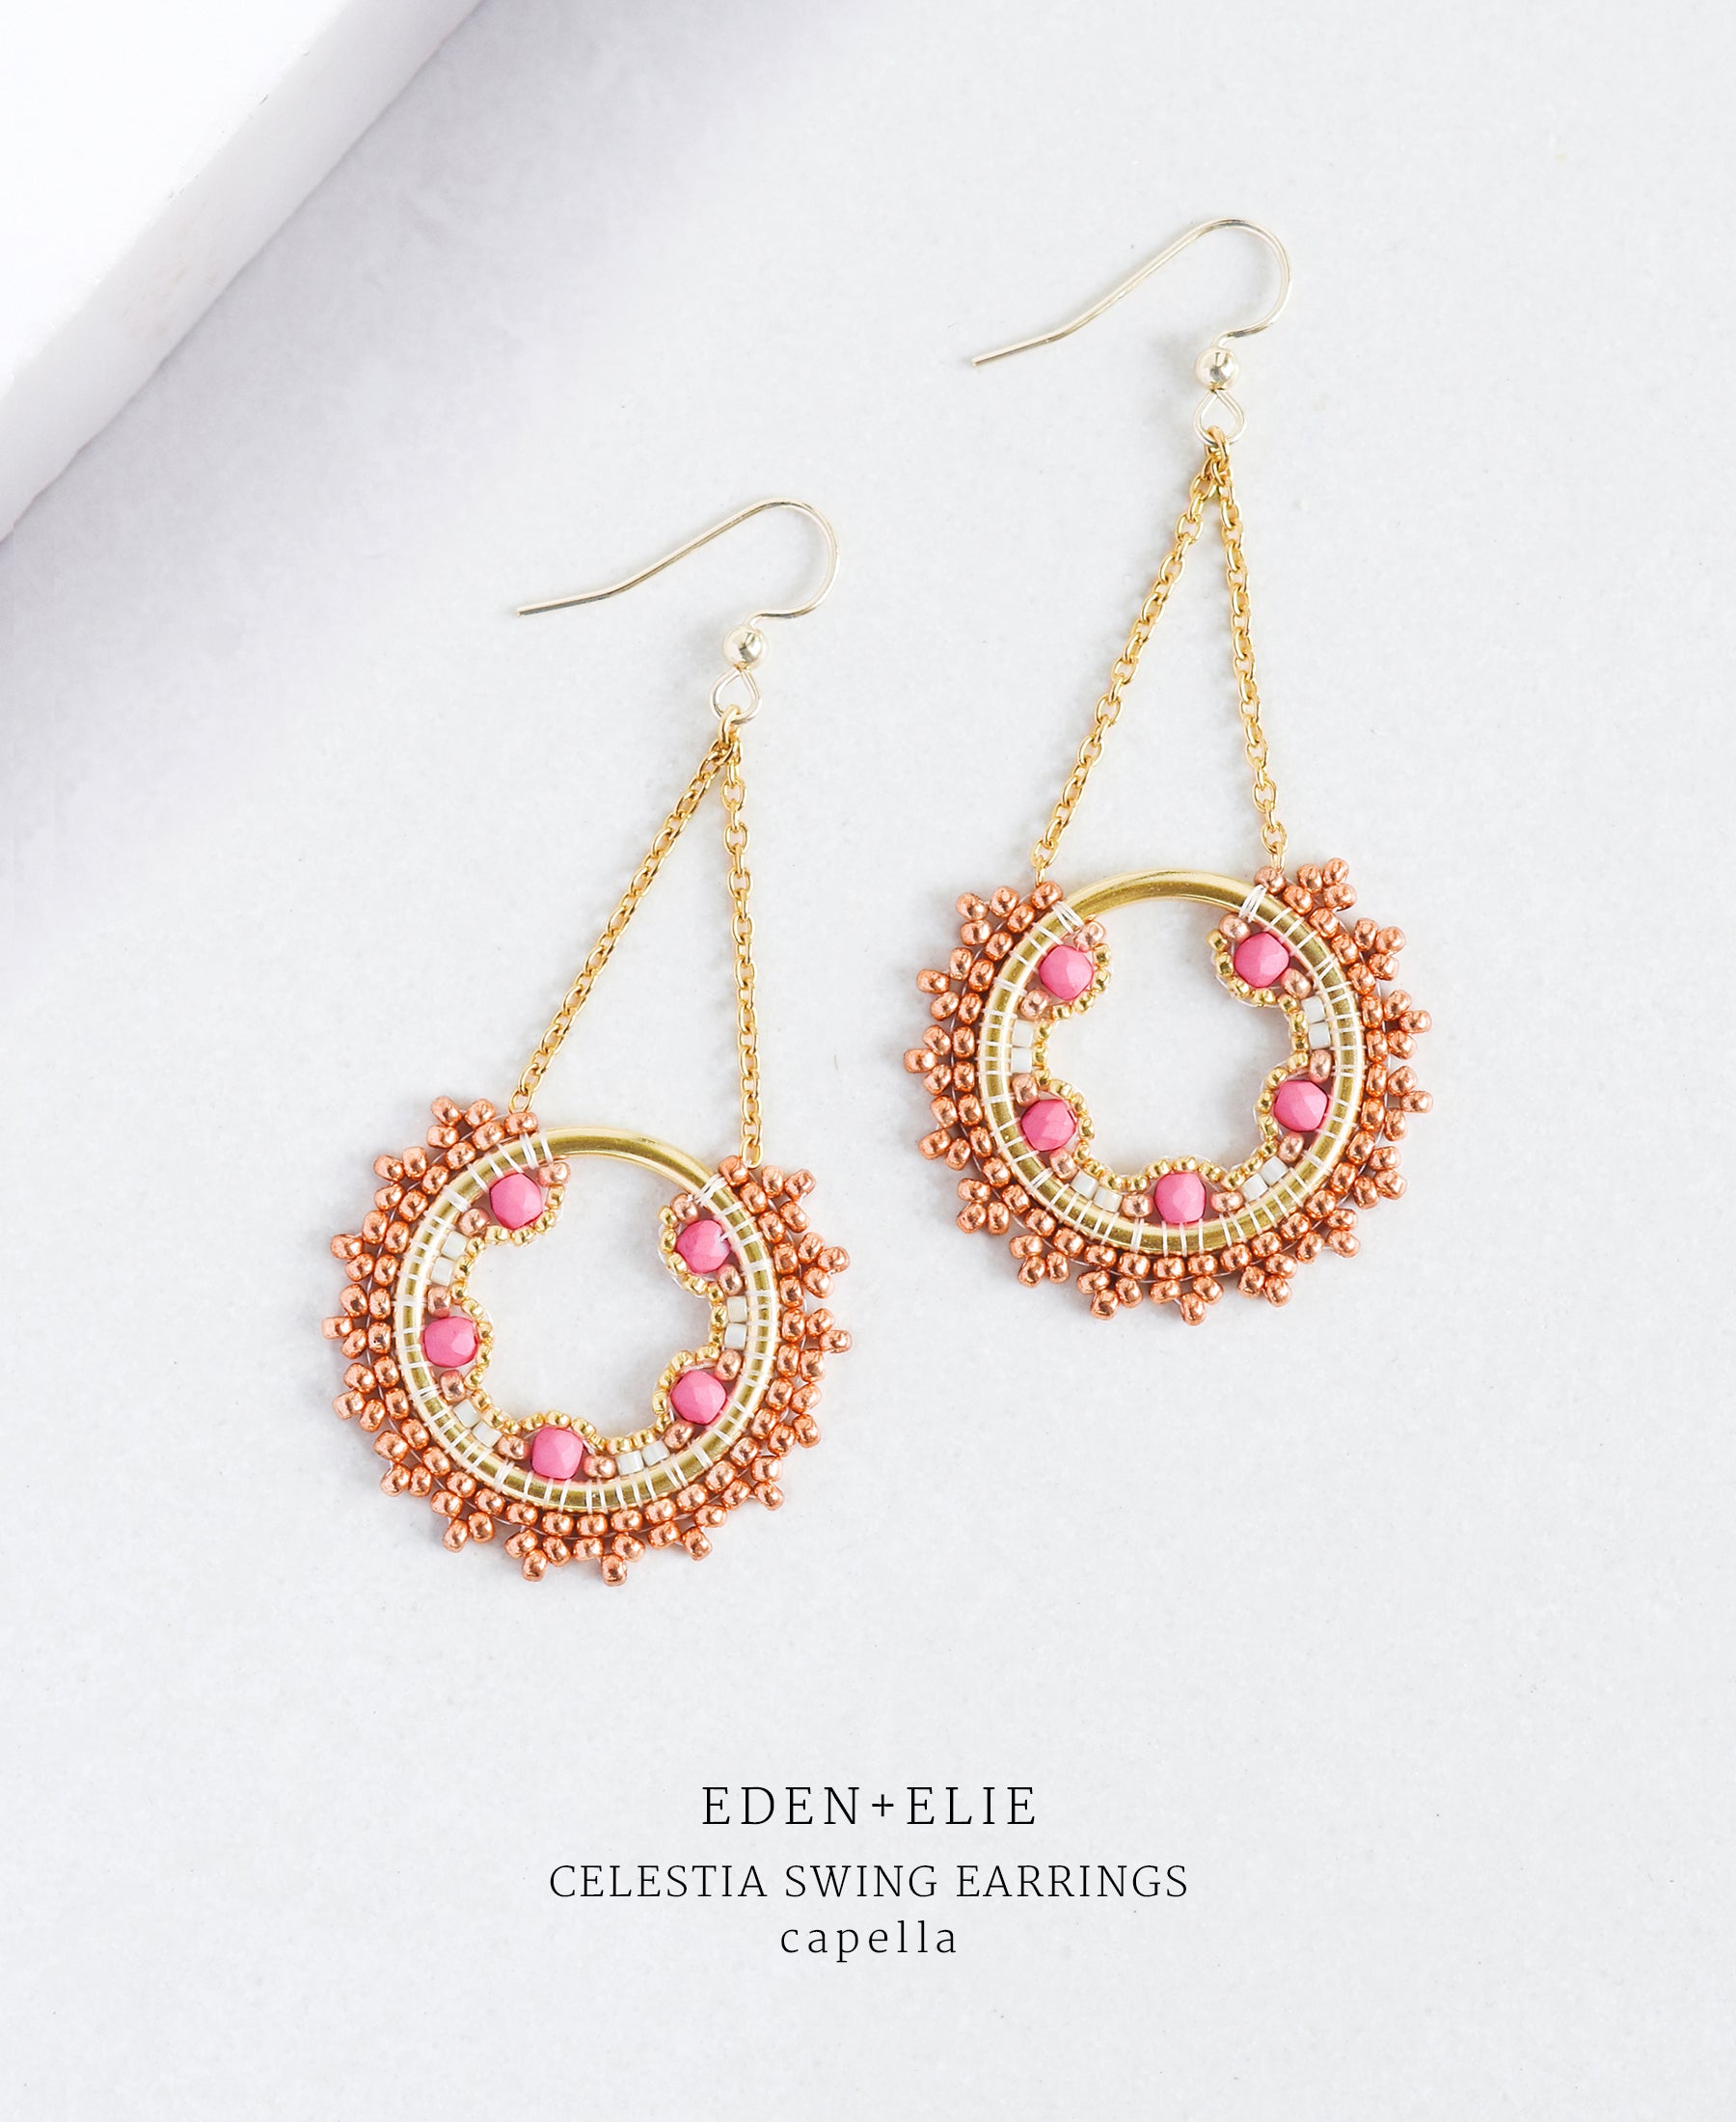 EDEN + ELIE Celestia swing earrings - capella pink